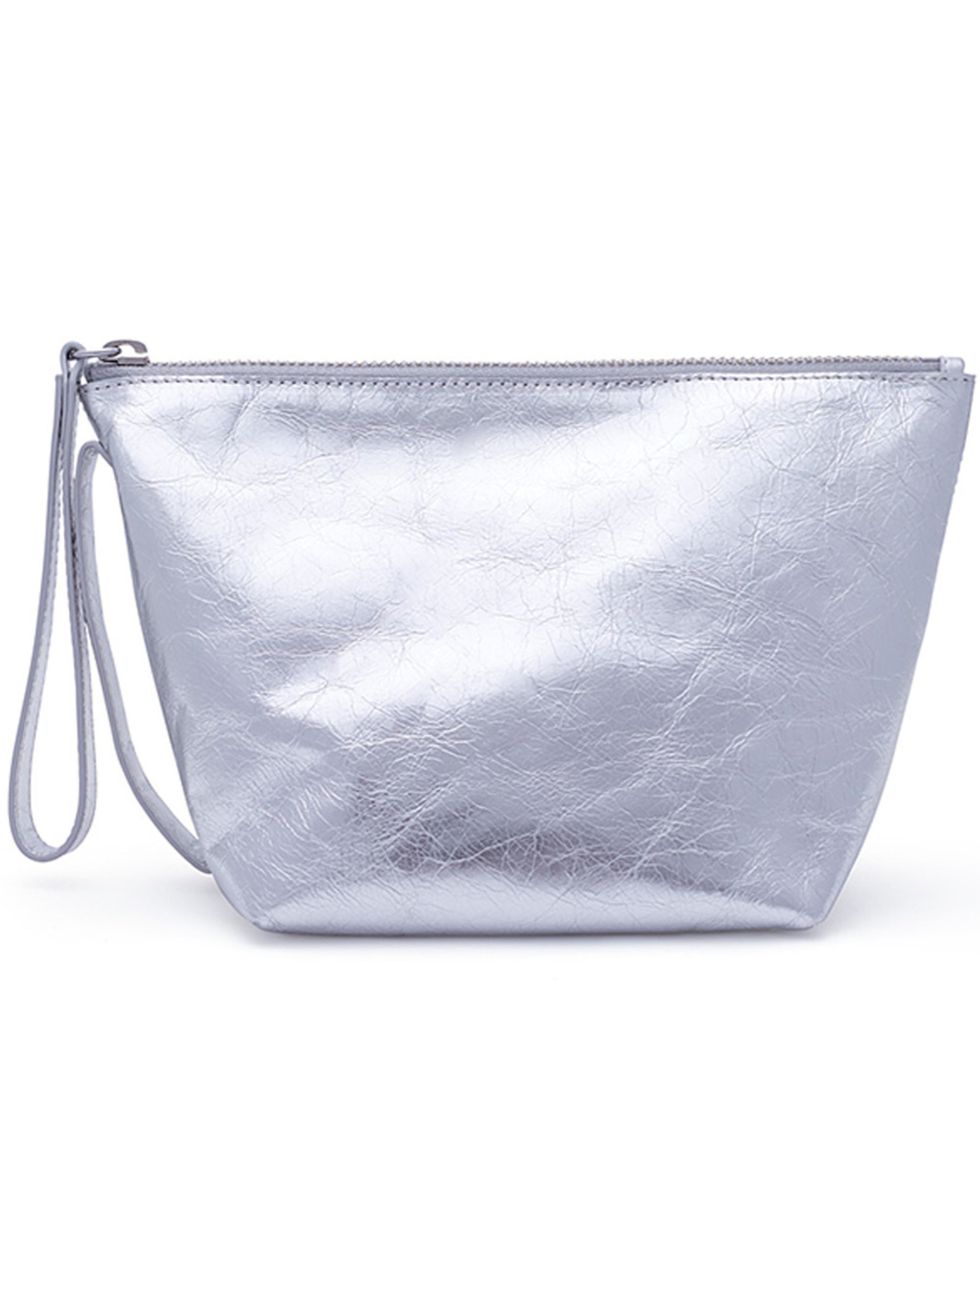 Textile, Bag, Leather, Shoulder bag, Material property, Silver, Zipper, Strap, 